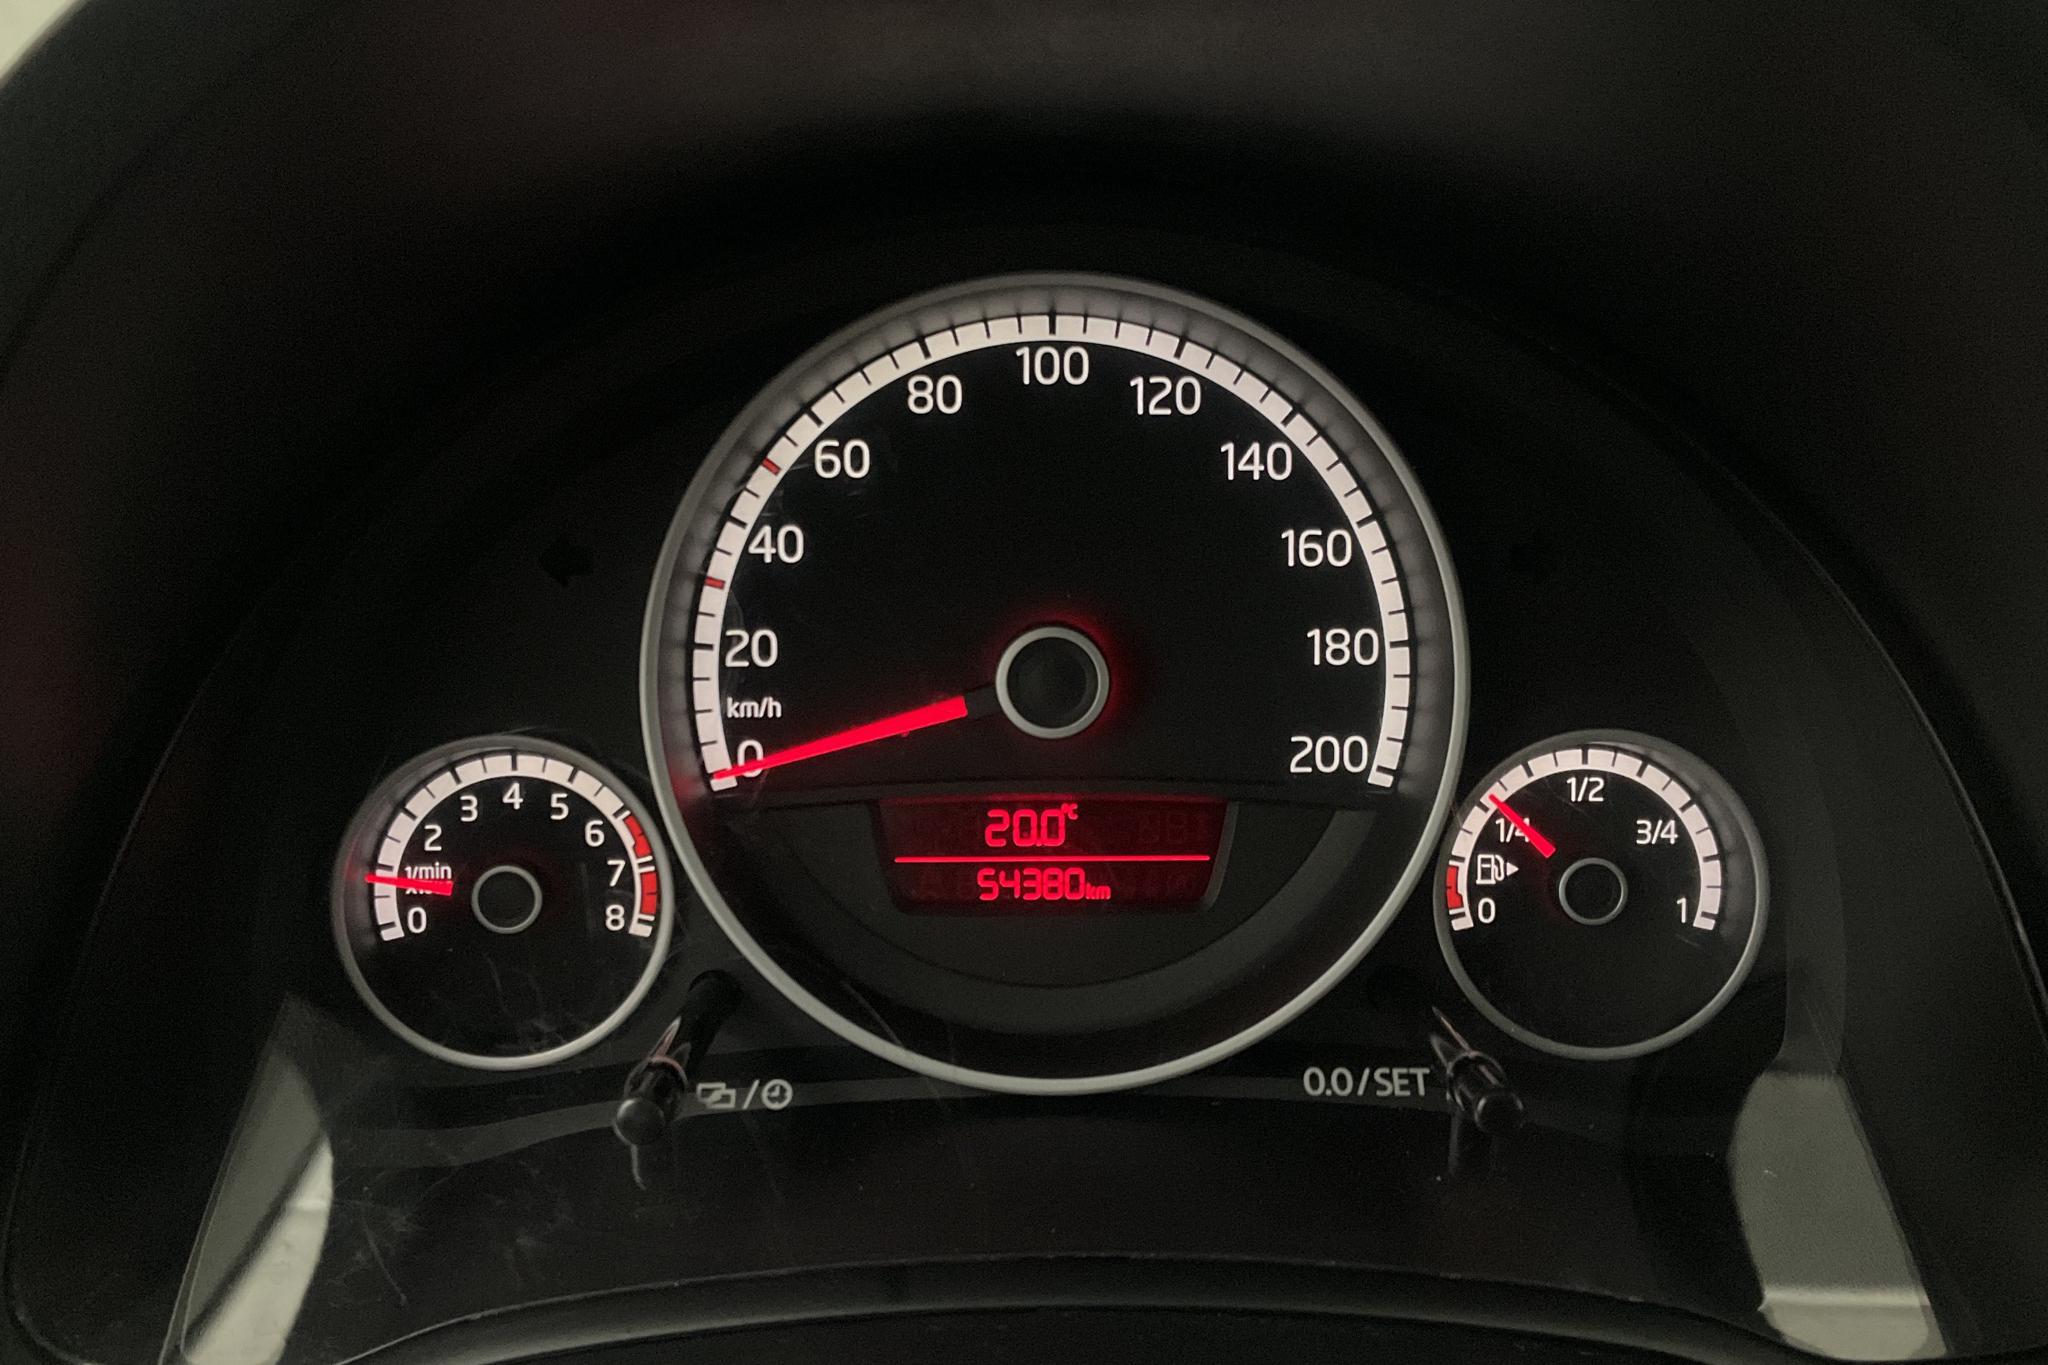 VW up! 1.0 5dr (75hk) - 5 439 mil - Manuell - röd - 2013